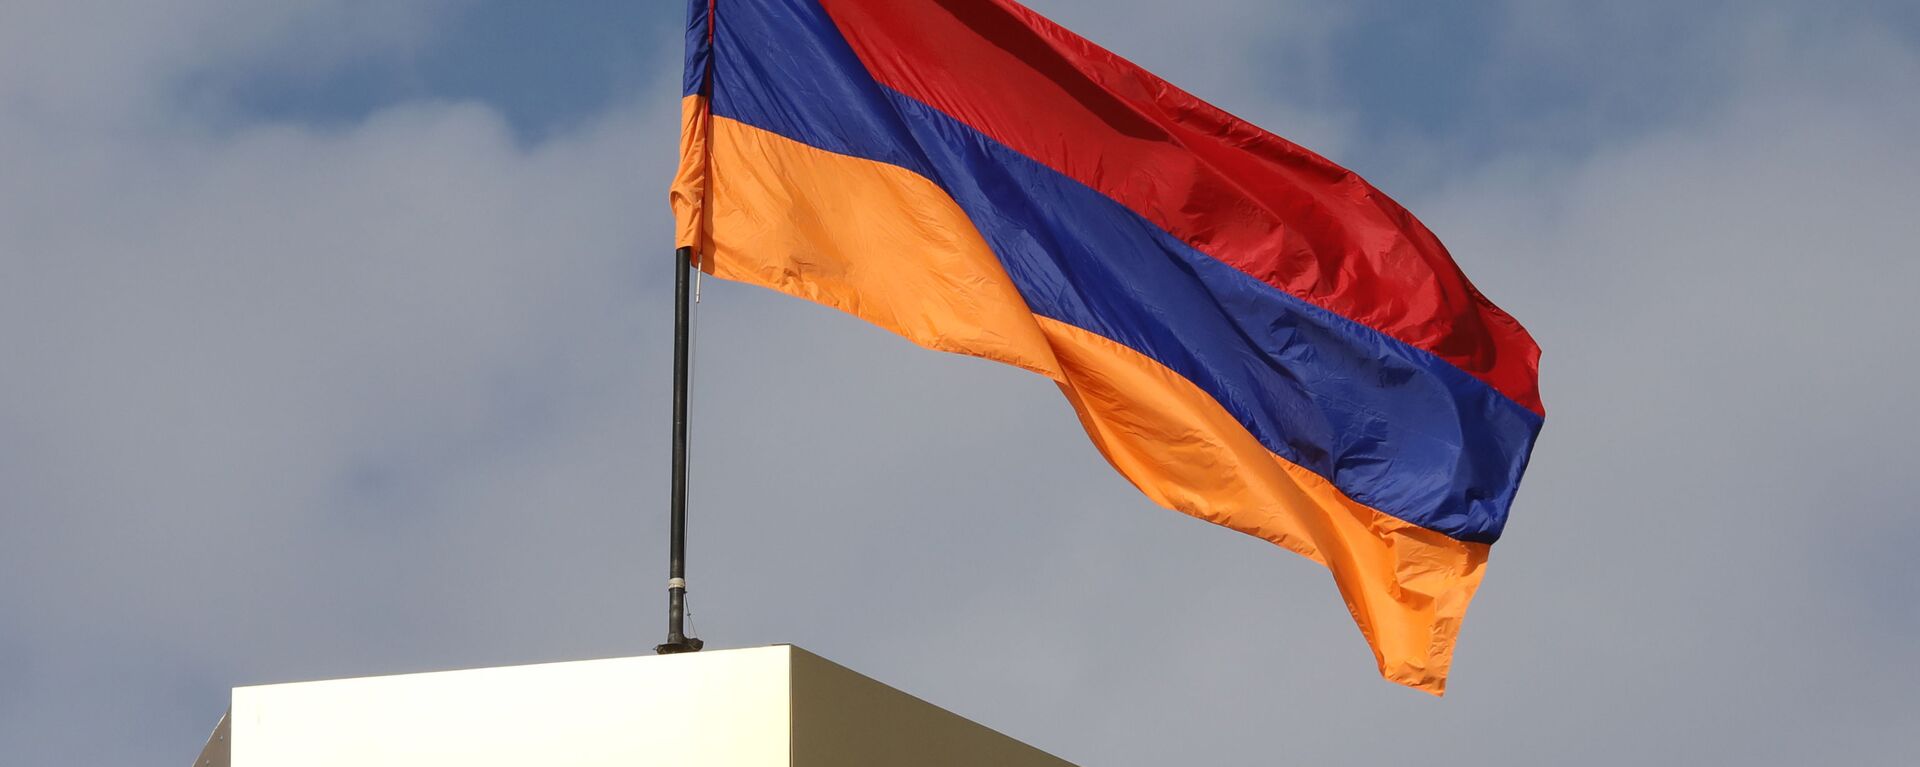 Ermenistan bayrak - Ermenistan bayrağı - Sputnik Türkiye, 1920, 27.09.2021